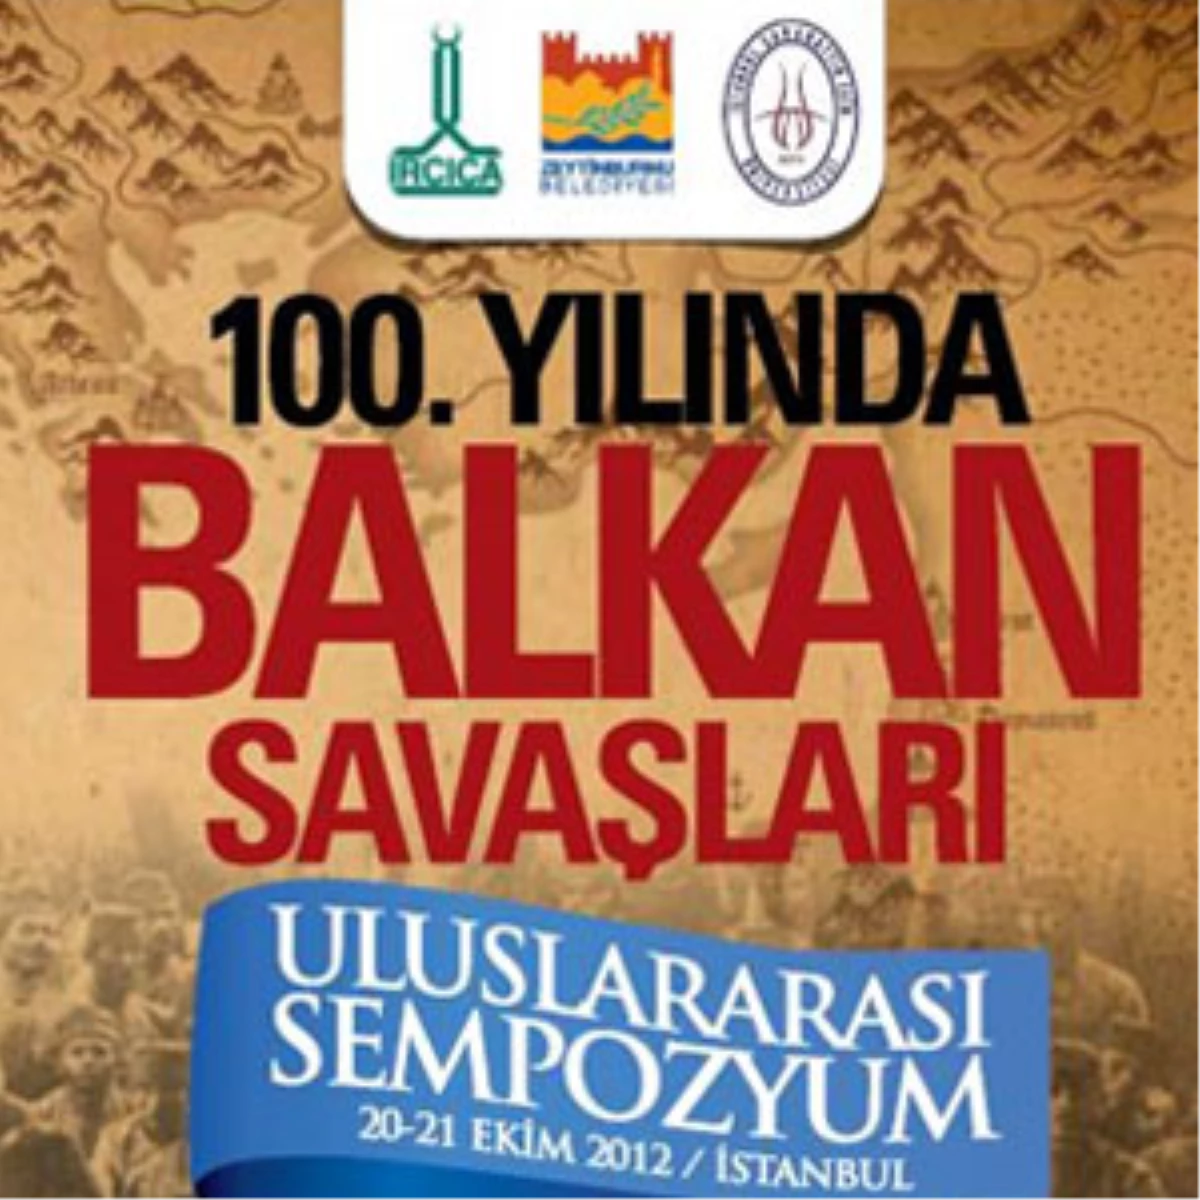 100. Yılında Balkan Savaşları Uluslararası Sempozyumu